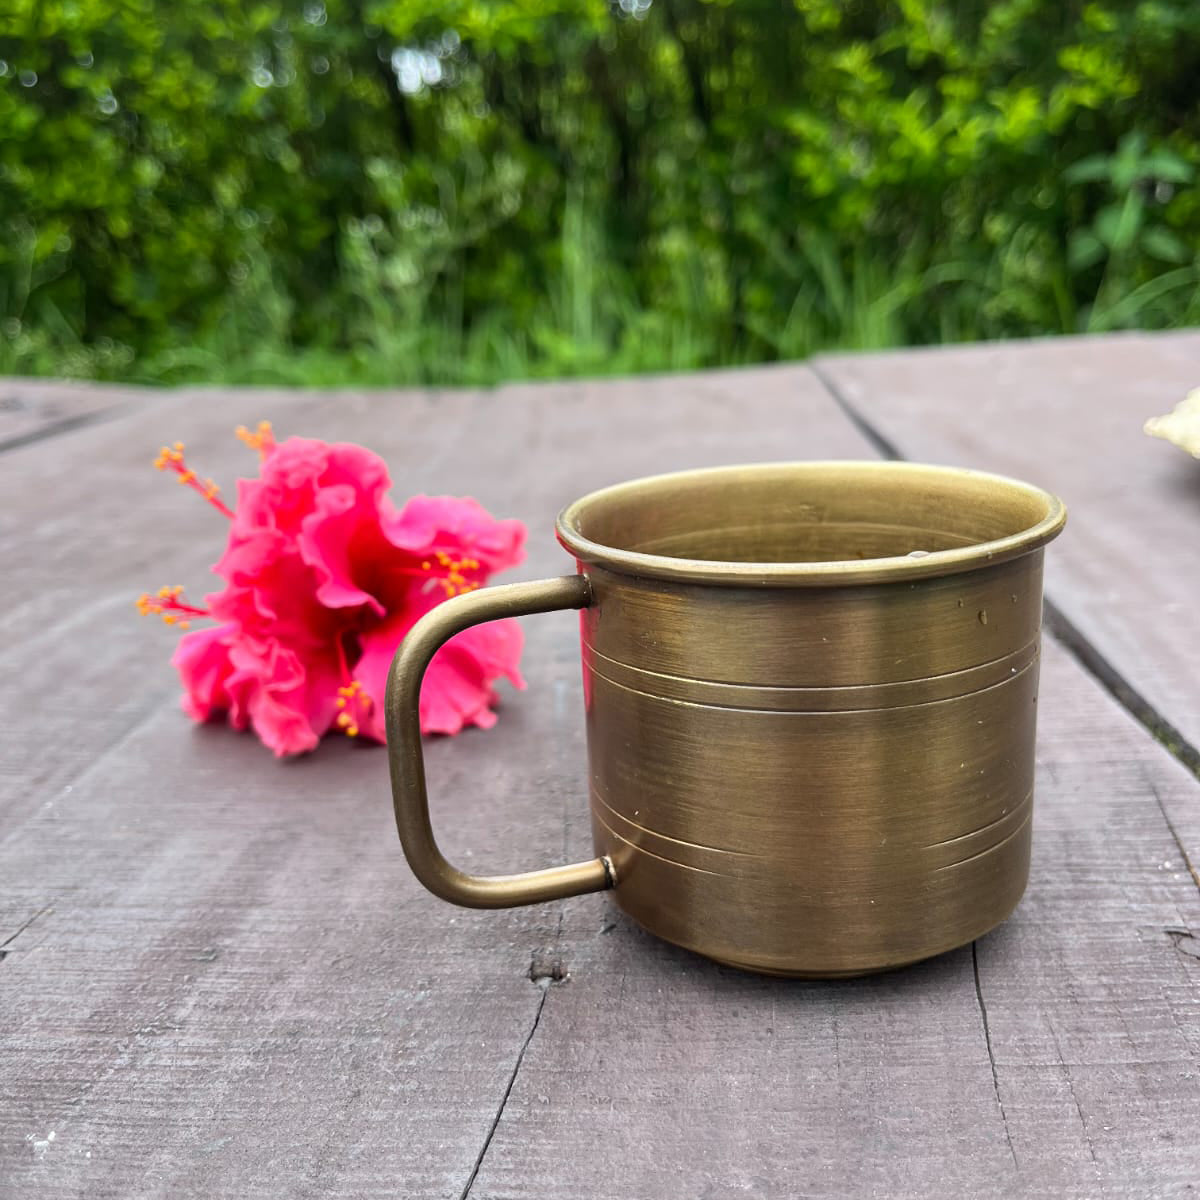 SAMA Homes - brass antique coffee mug